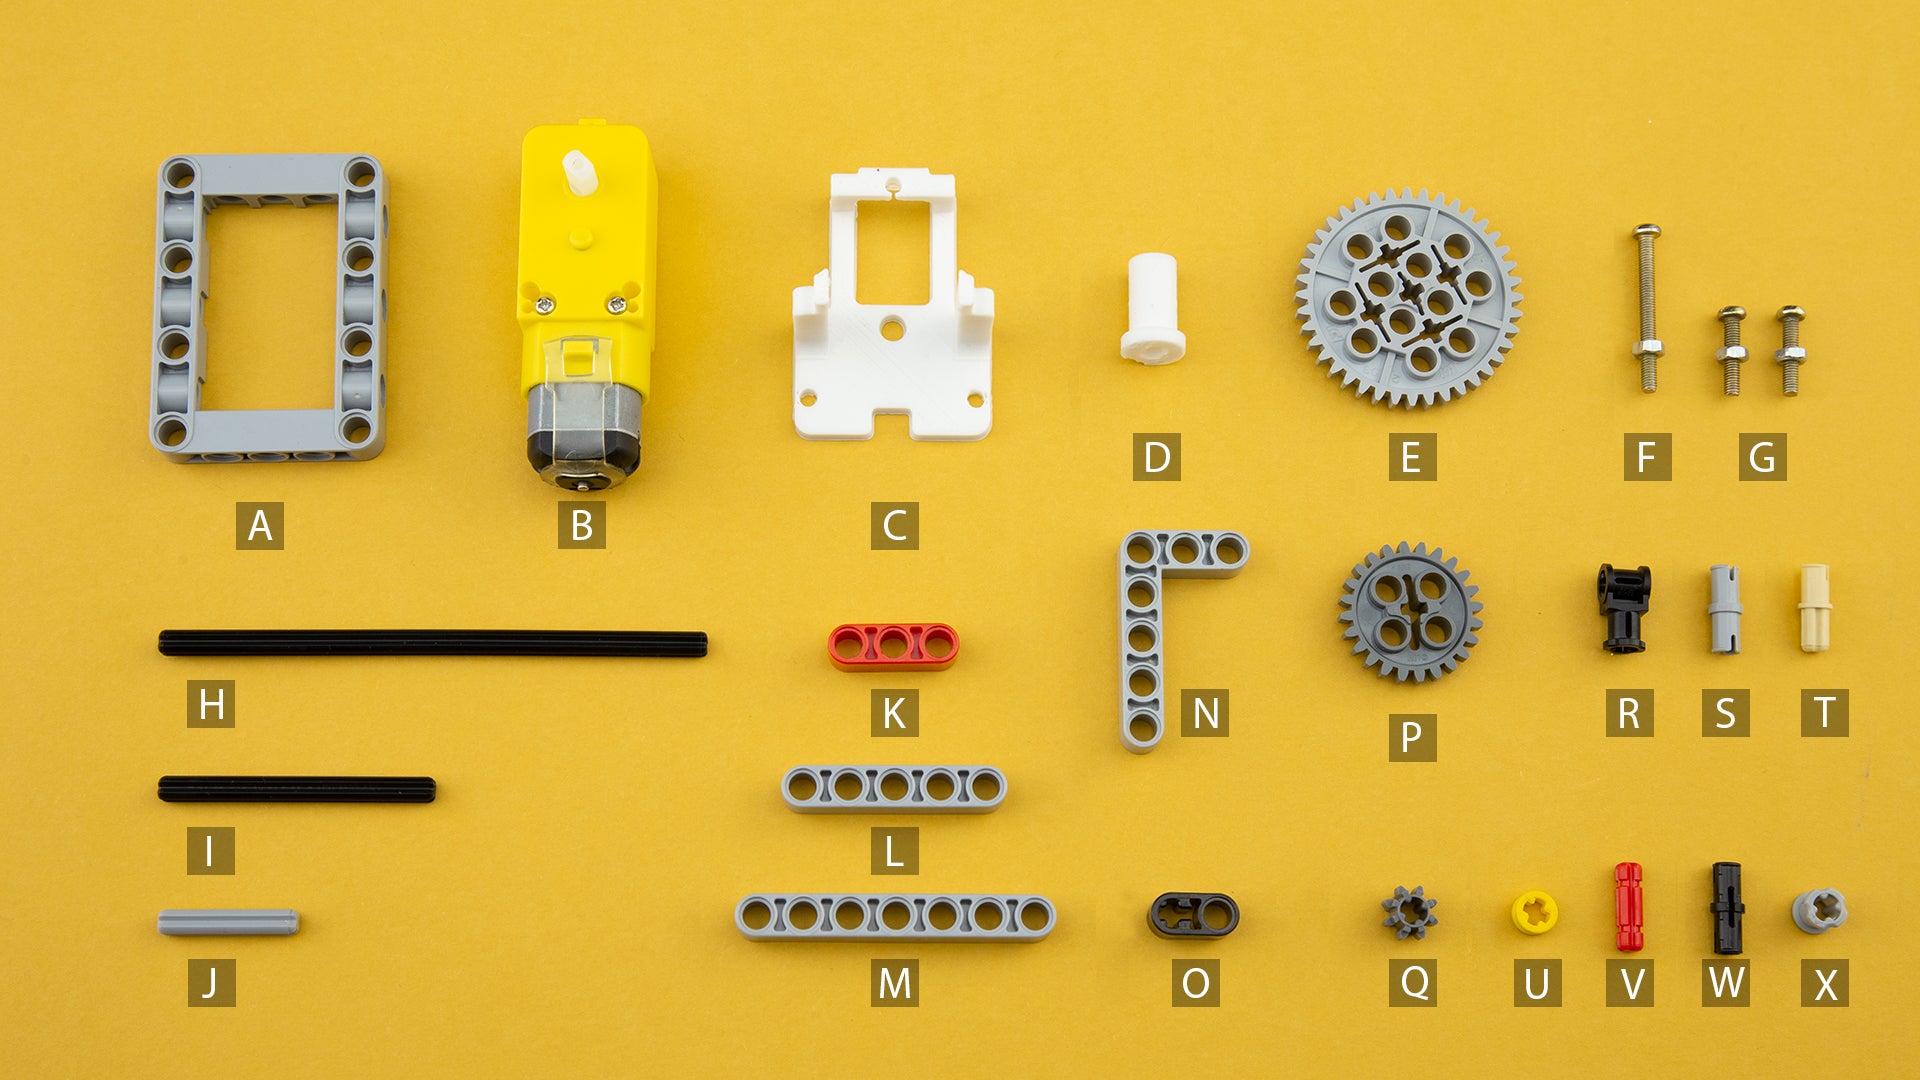 LEGO®-compatible components, DC gear motors, and custom 3D printed parts